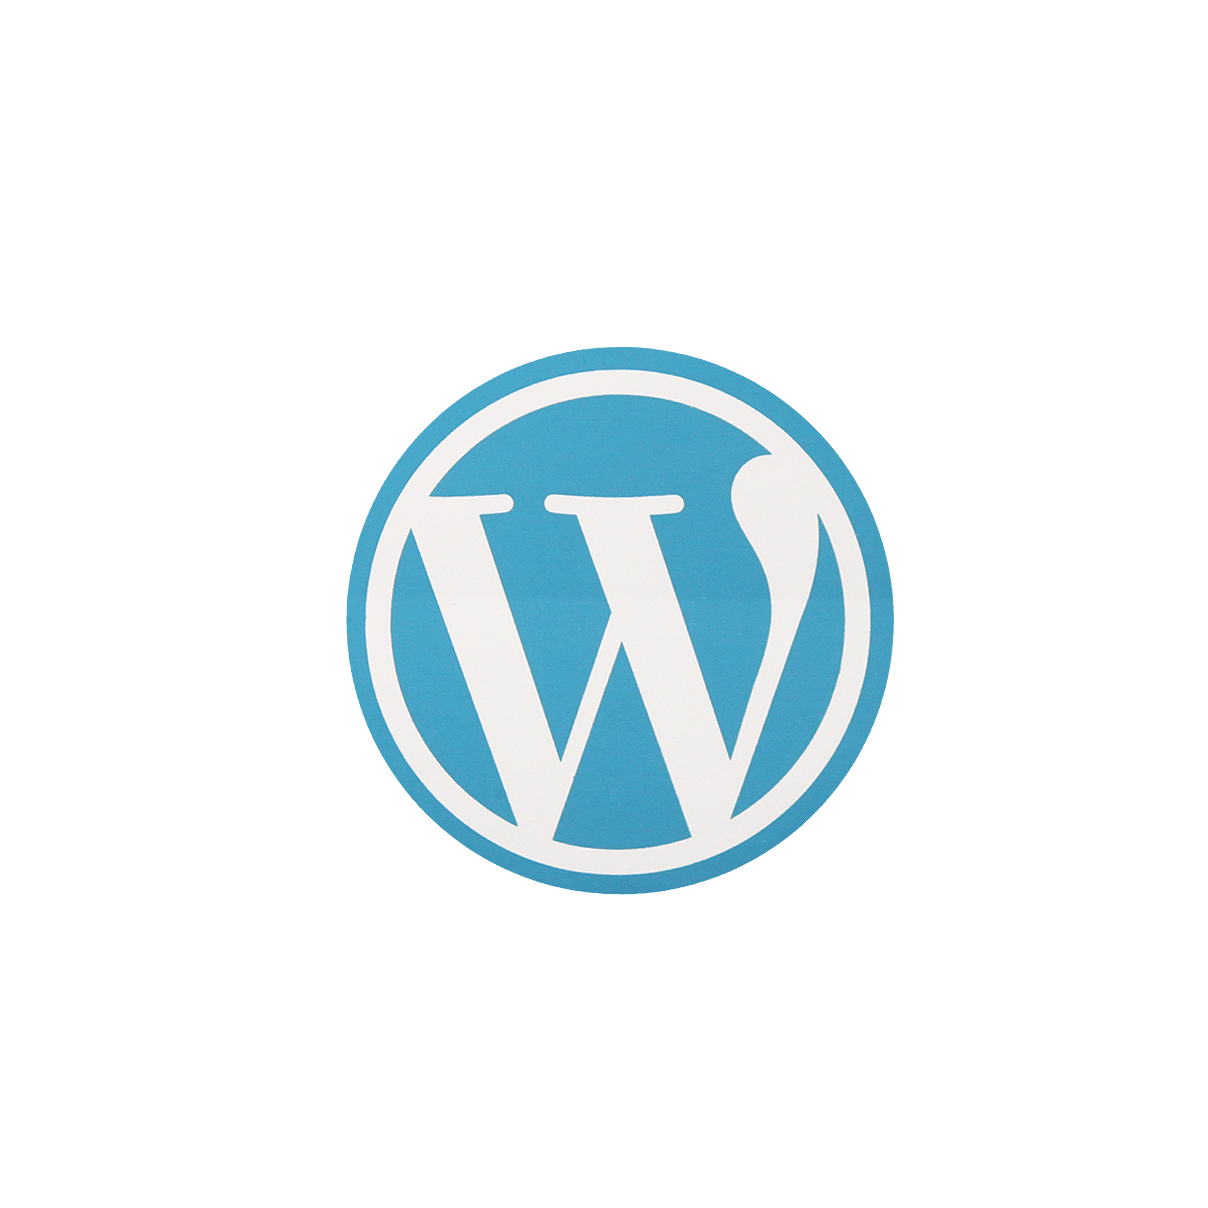 Wordpress Logo W Icon PNG Transparent pngteam.com